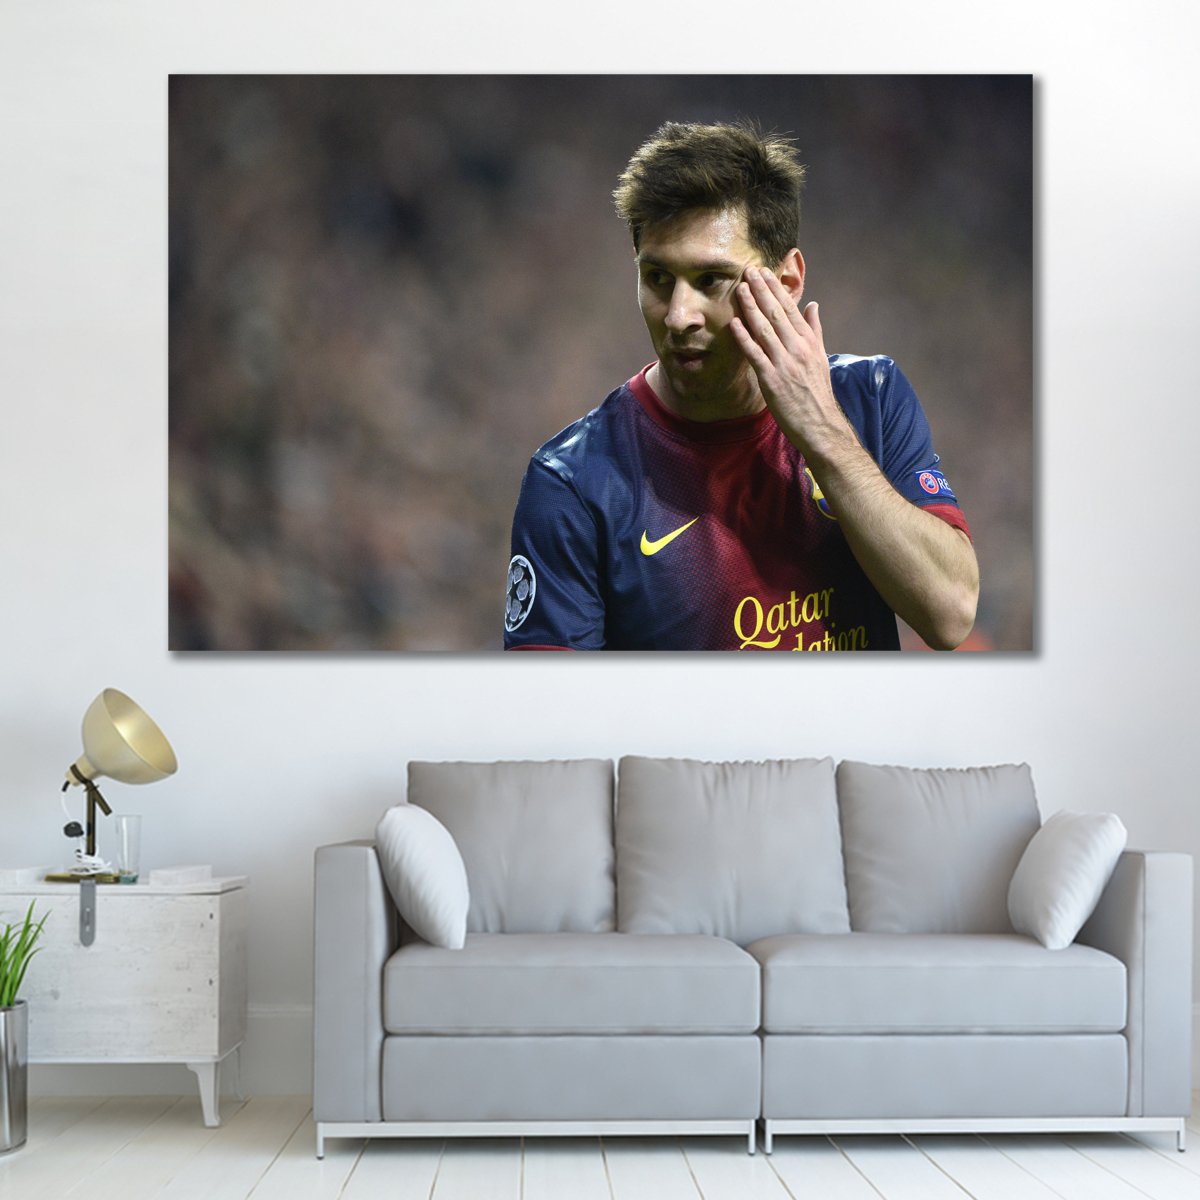 Tranh treo tường cầu thủ Messi 12